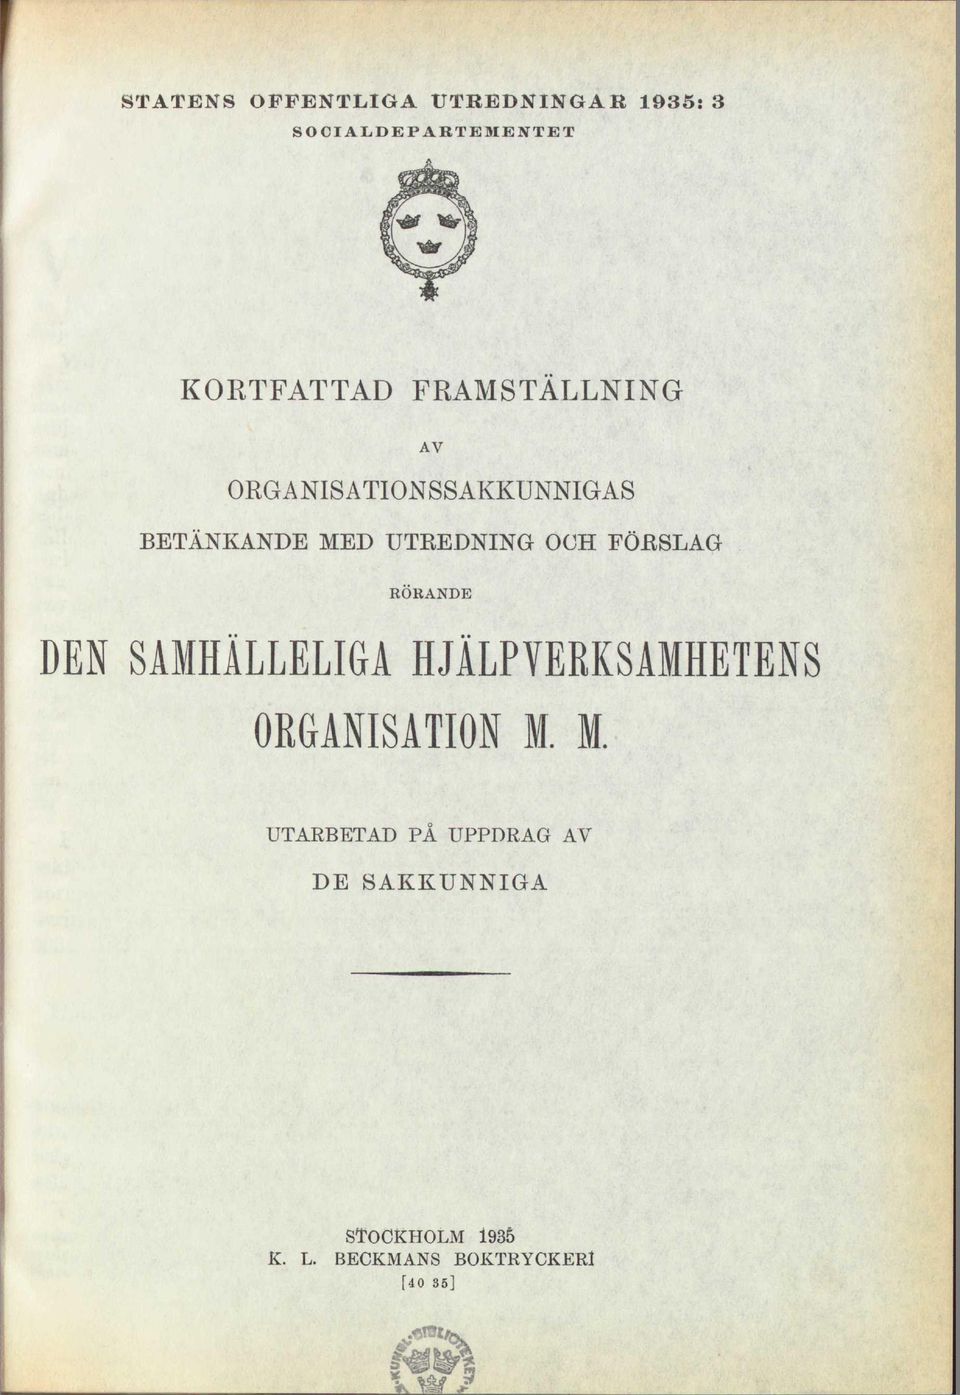 FÖRSLAG RÖRANDE DEN SAMHÄLLELIGA HJÄLPYERRSAMHETENS ORGANISATION M.